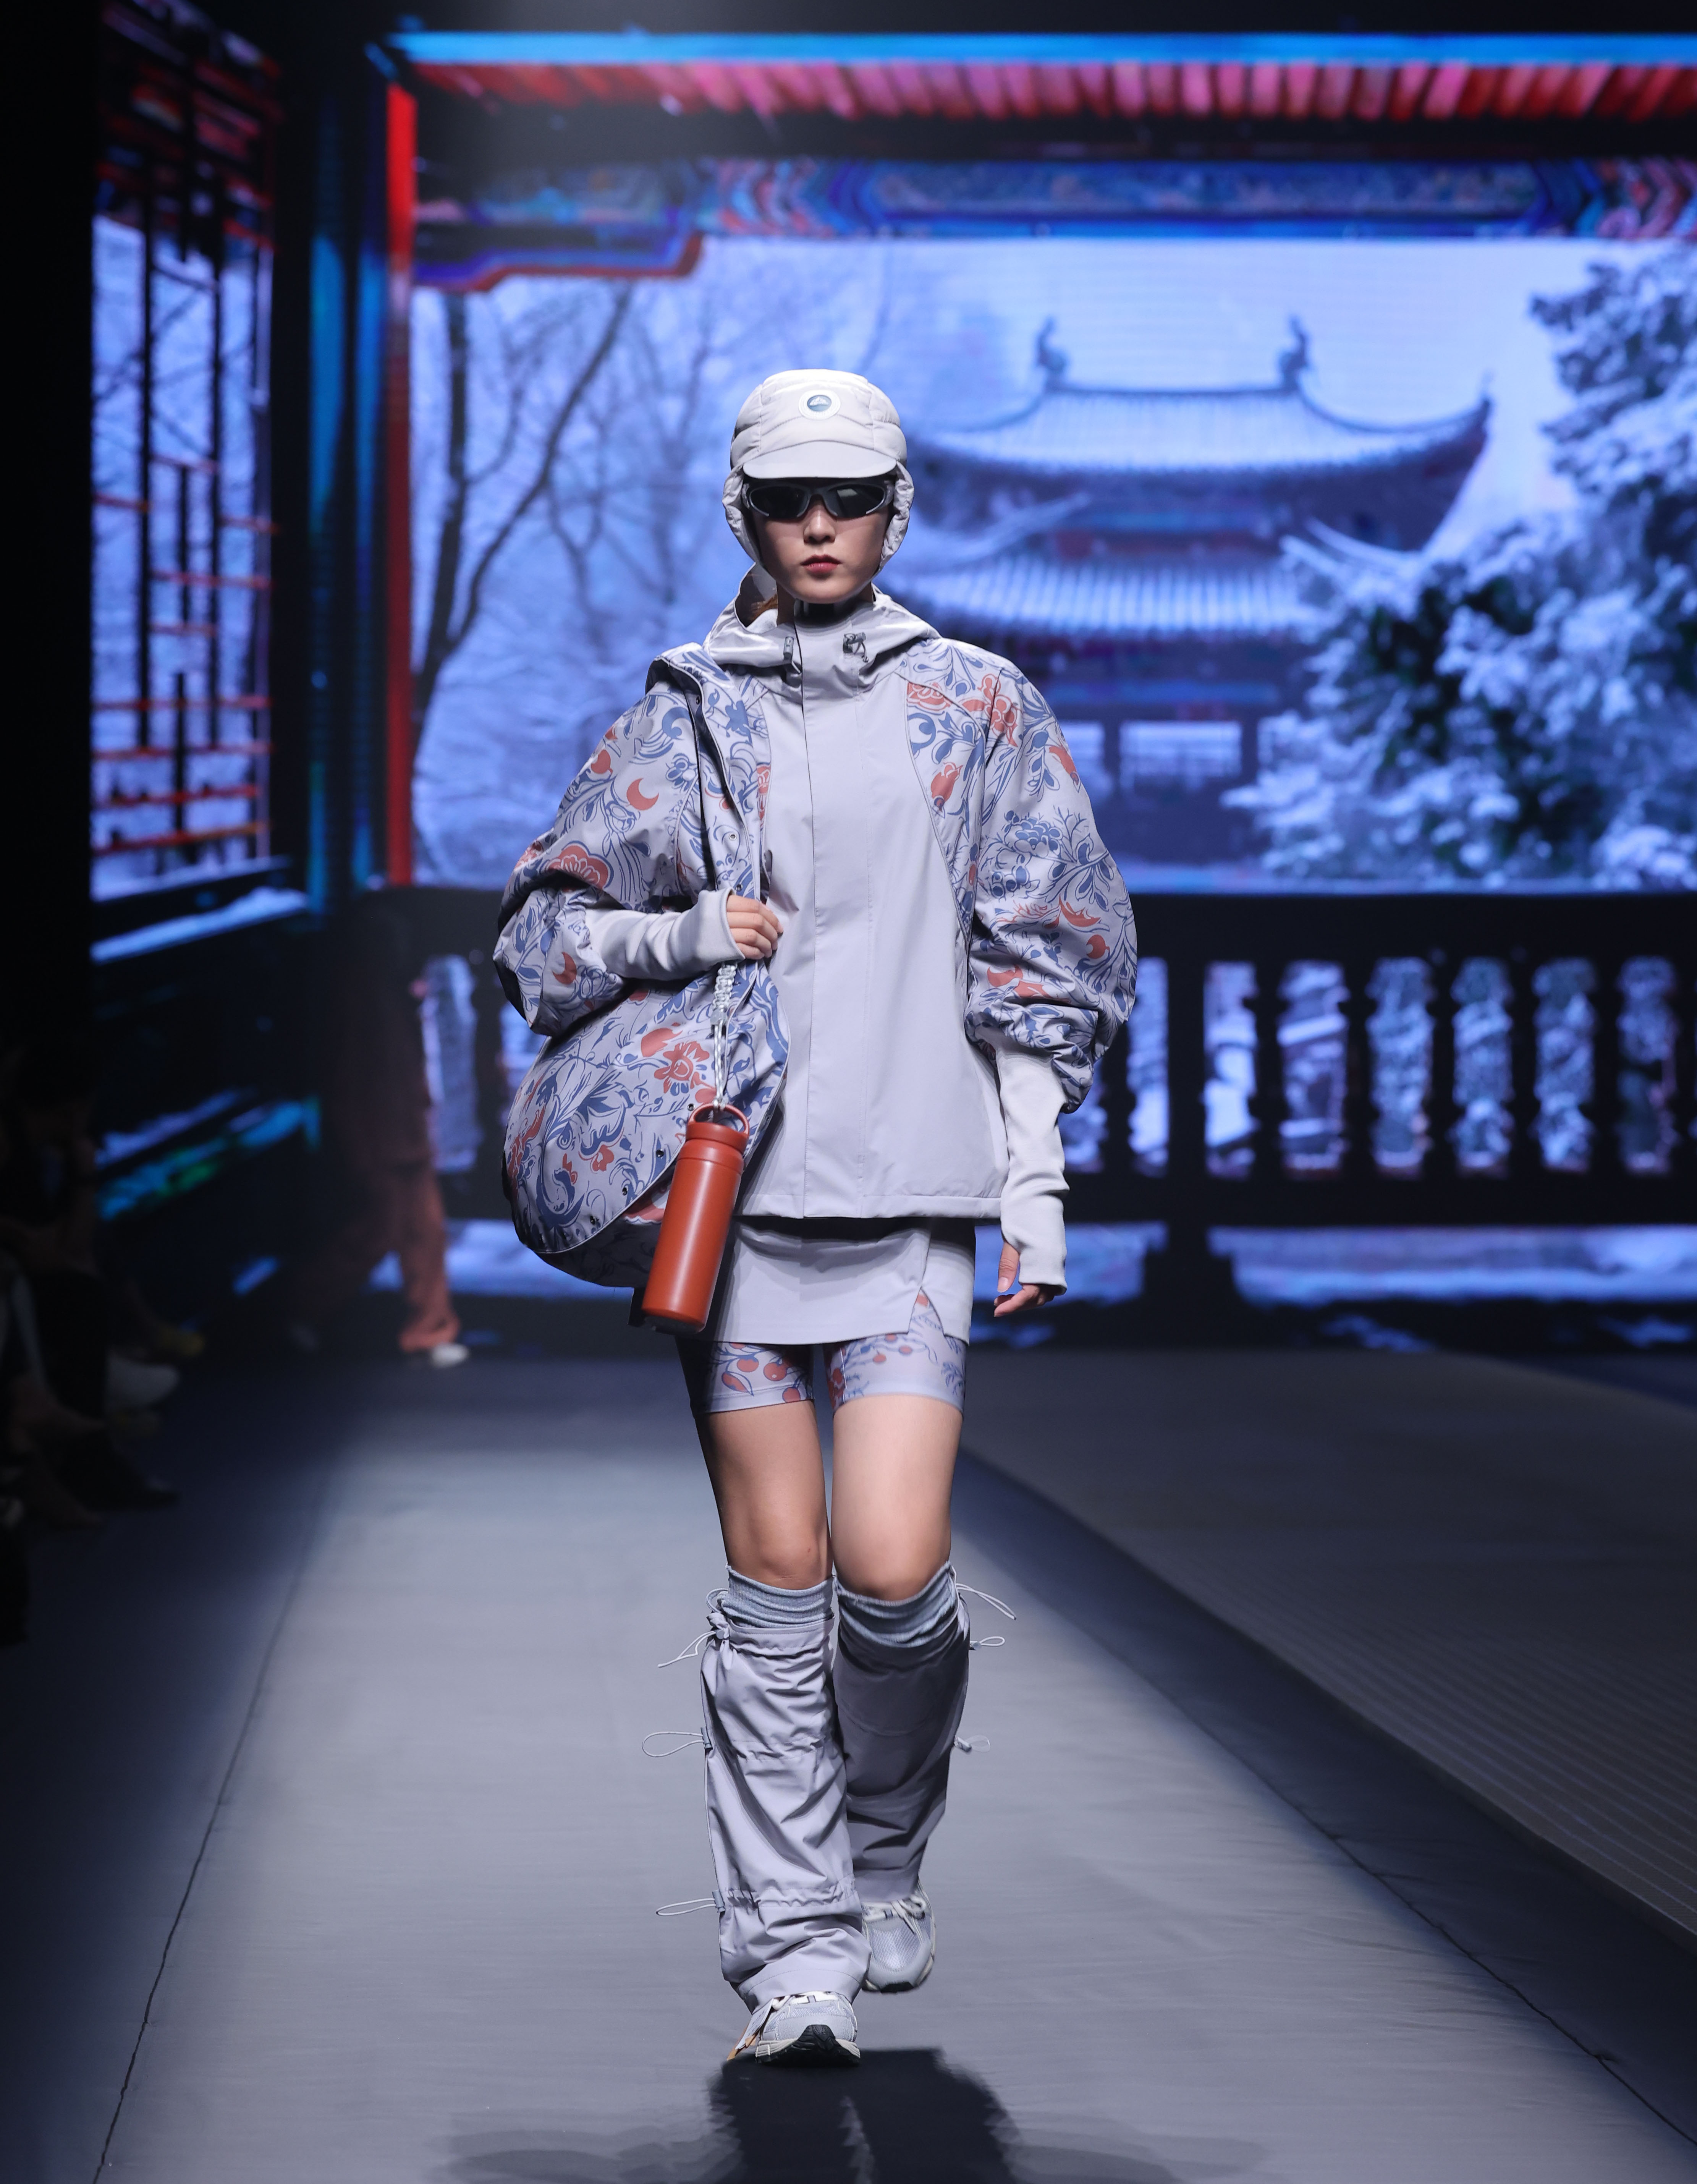 沖鋒衣品牌創新暨新銳設計師大賽在京舉行